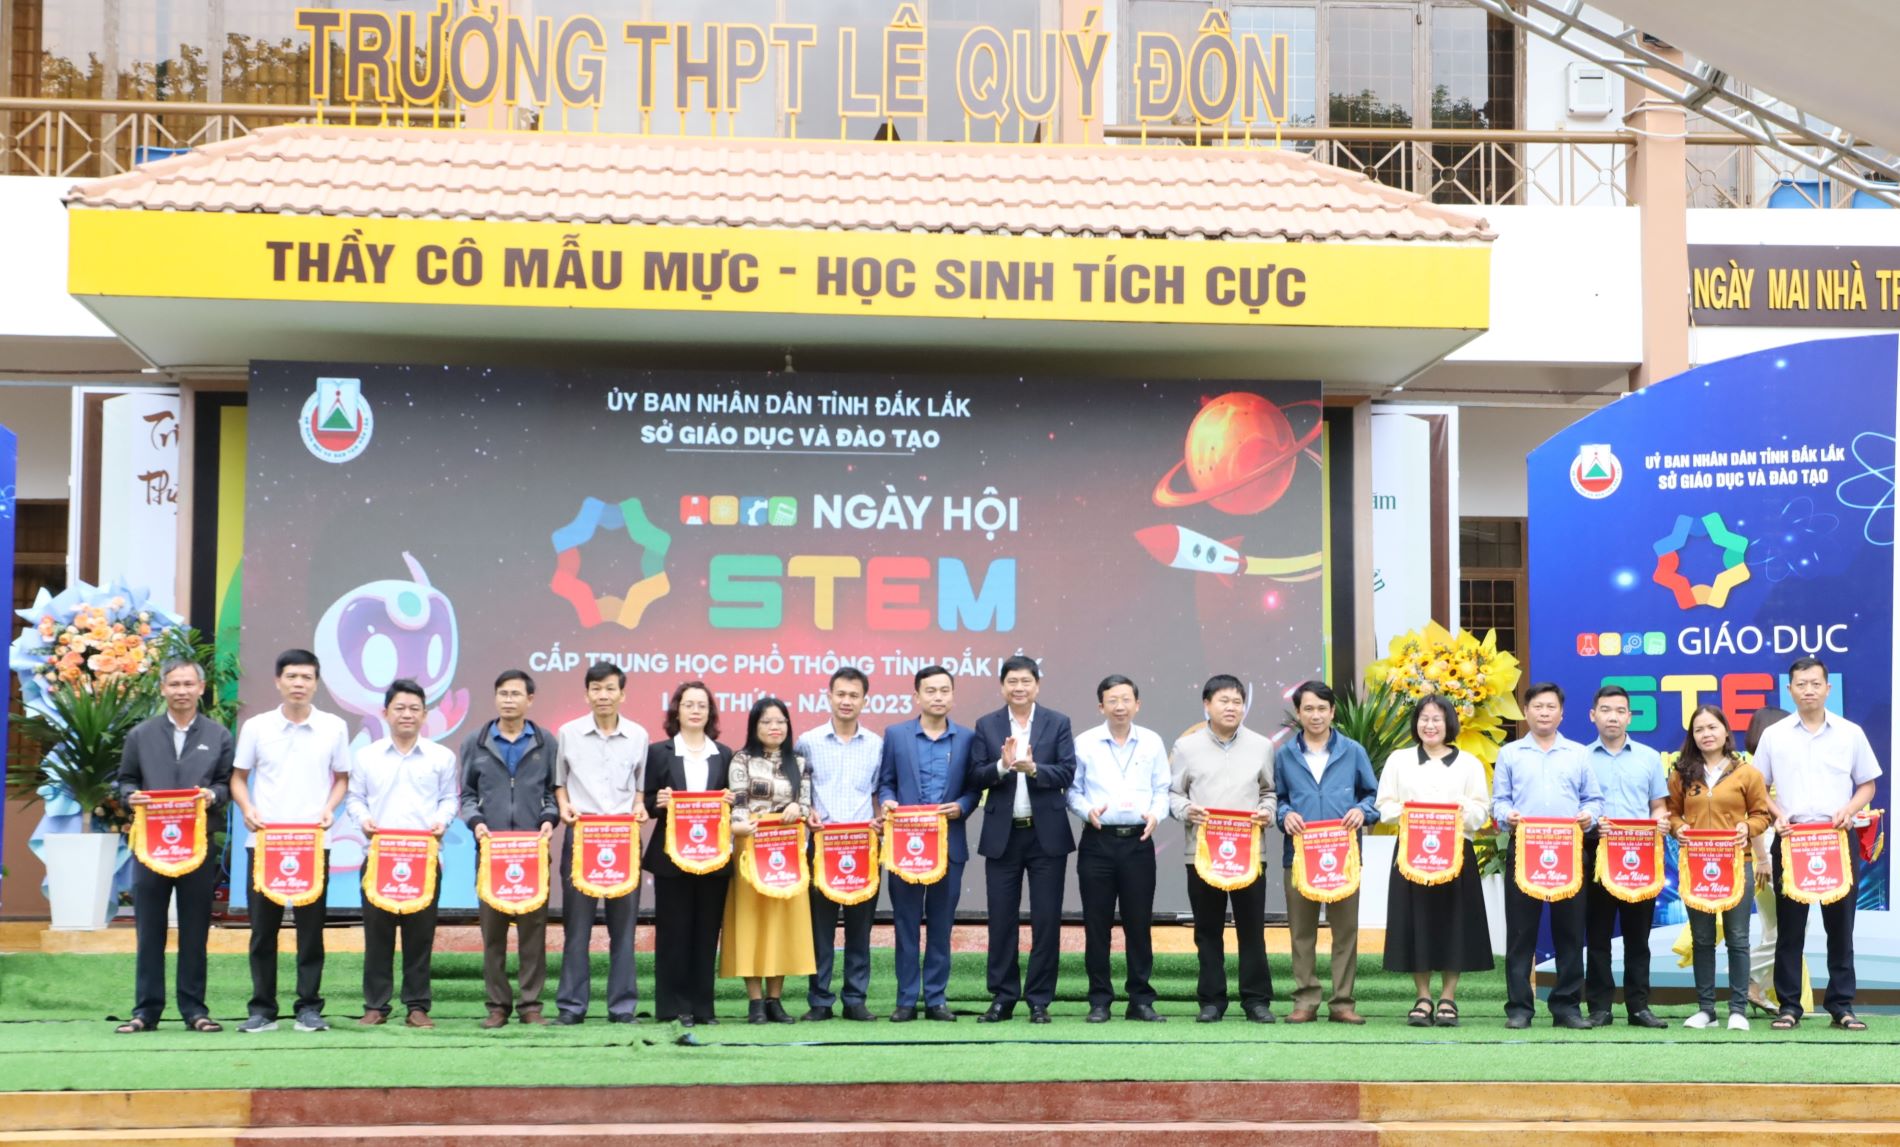 Khai mạc Ngày hội STEM cấp THPT tỉnh Đắk Lắk lần thứ I – năm 2023